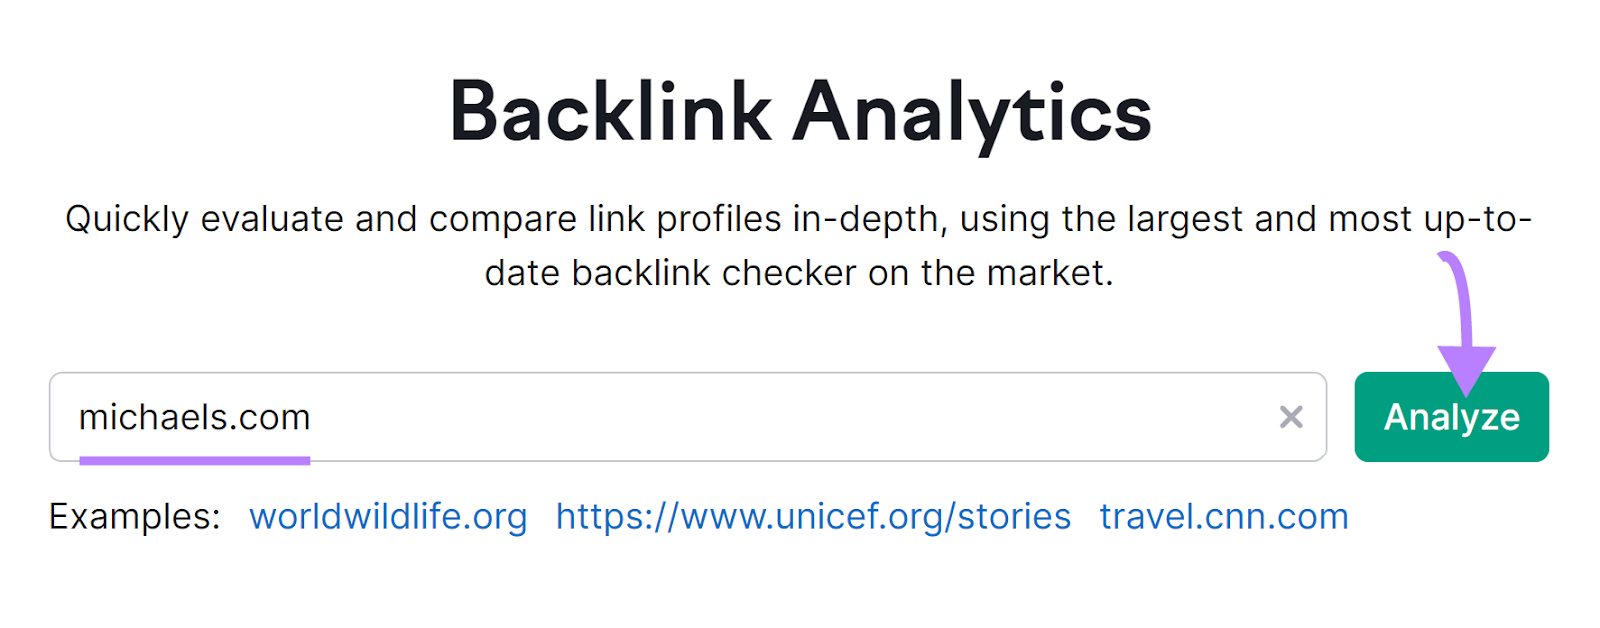 "michaels.com" entered into the Backlink Analytics hunt  bar